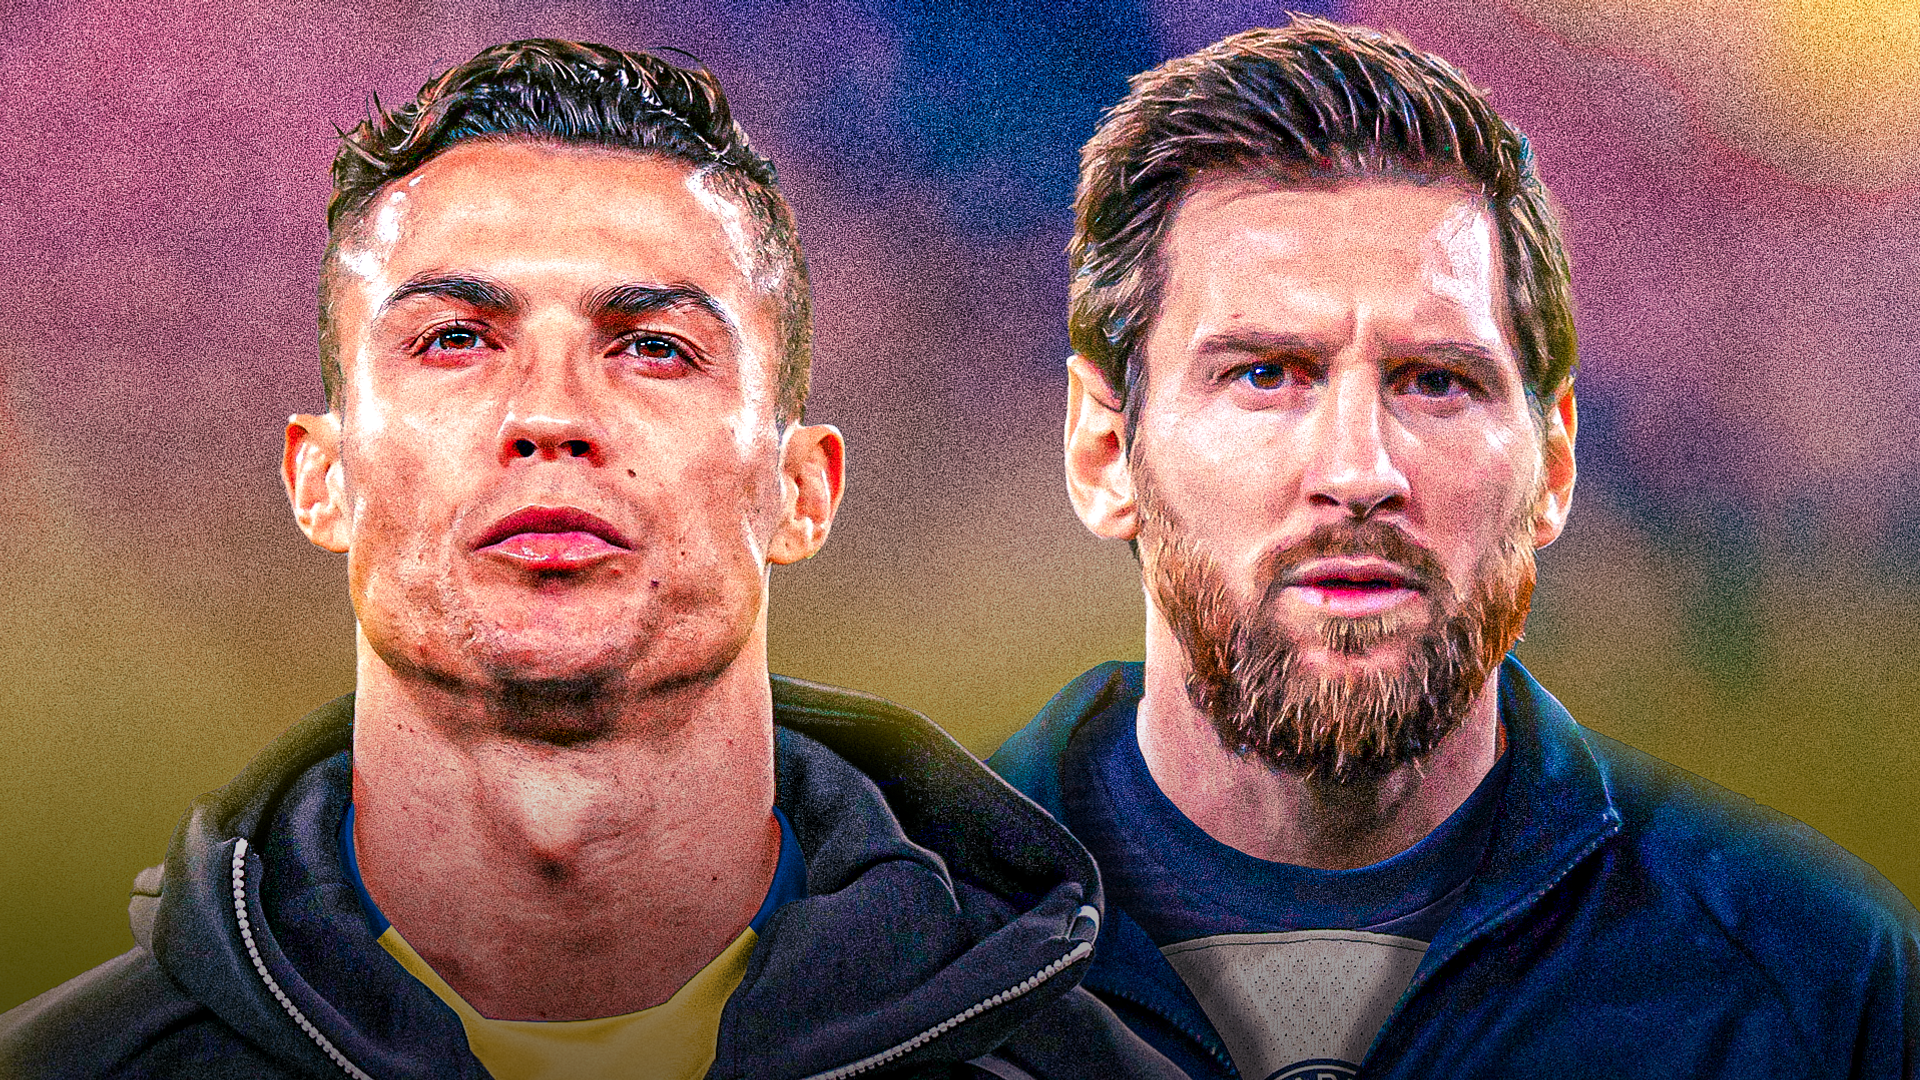 Cristiano Ronaldo và Lionel Messi là hai ngôi sao bóng đá nổi tiếng nhất hiện nay và tạo nên cuộc tranh đấu gay cấn trong những năm qua. Hãy cùng xem họ chơi bóng như thế nào trong trận đấu sôi động giữa hai câu lạc bộ bóng đá nổi tiếng.